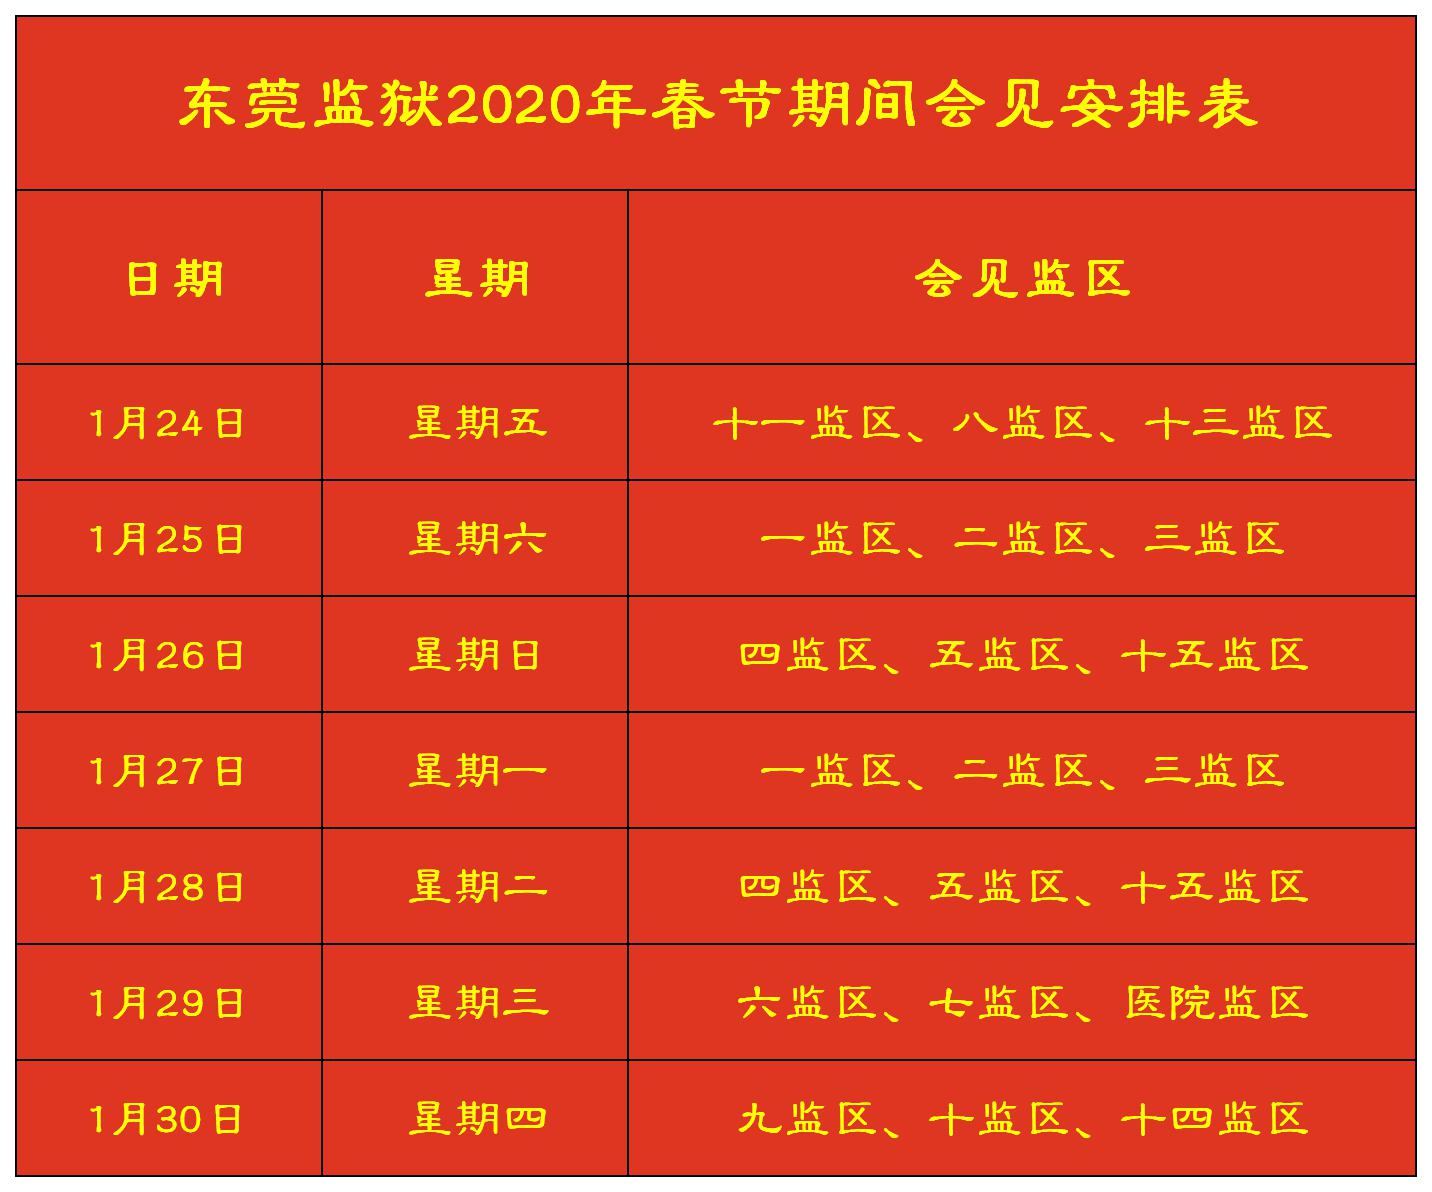 2020年东莞监狱春节期间会见安排表.jpg